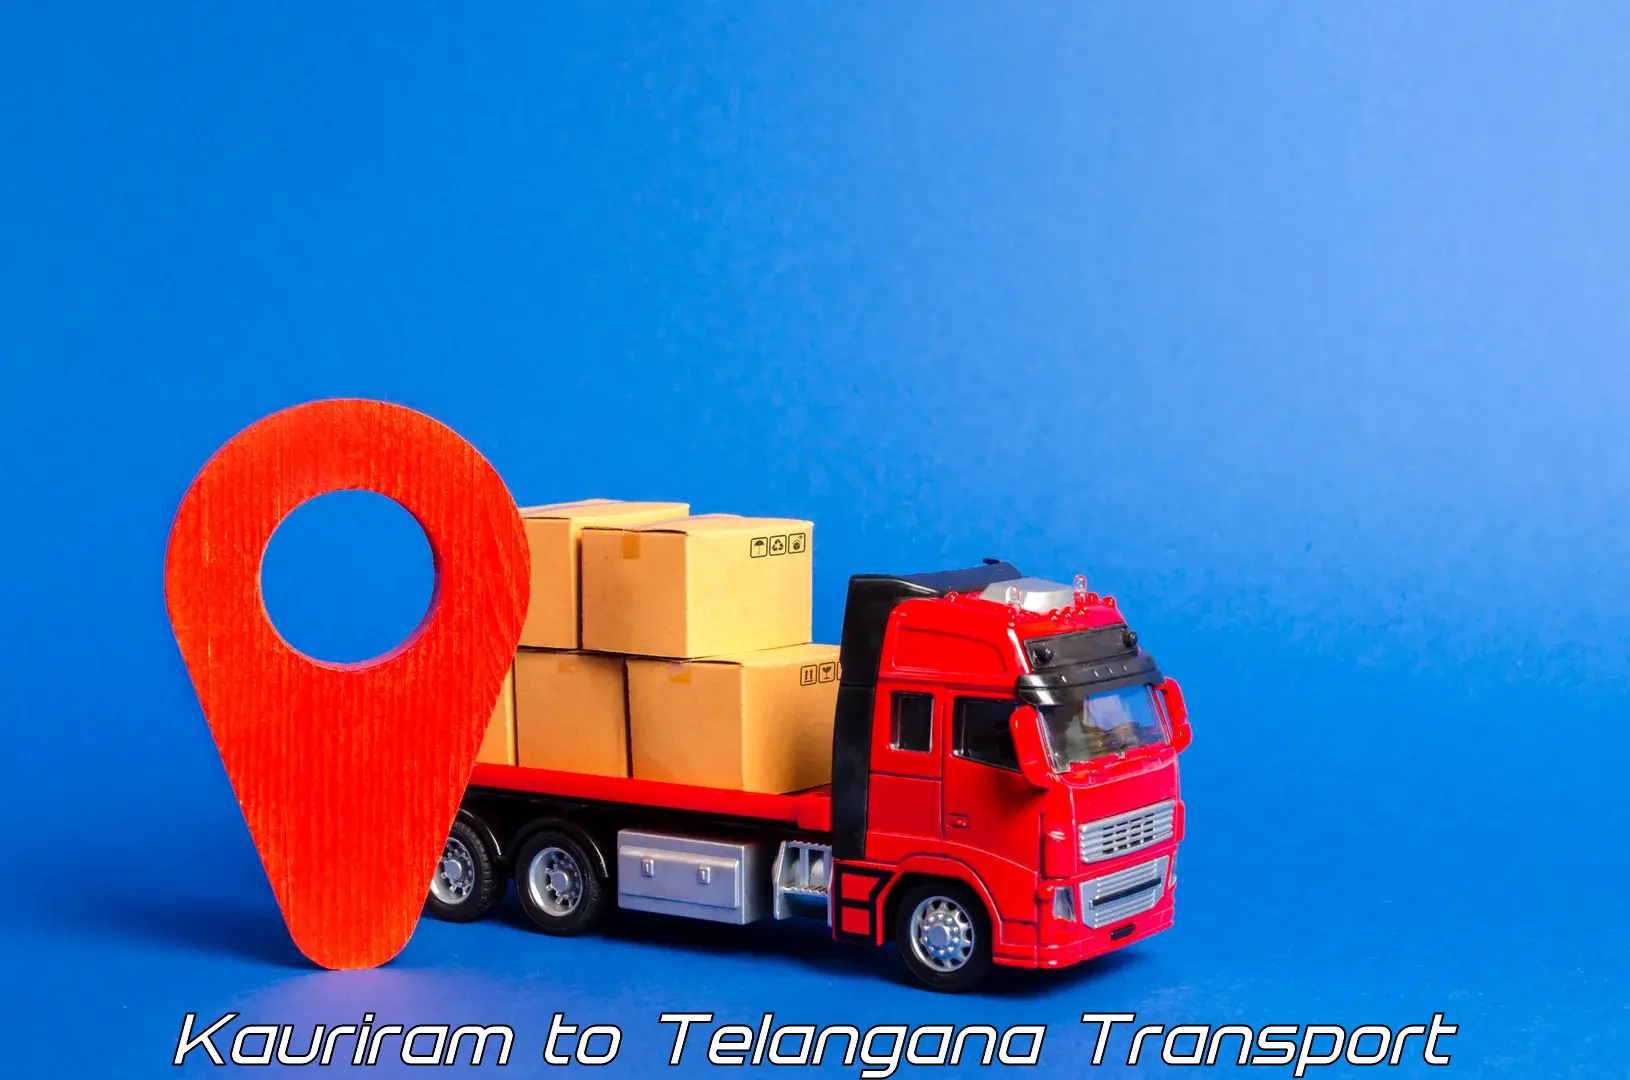 Transport bike from one state to another Kauriram to Nellikuduru